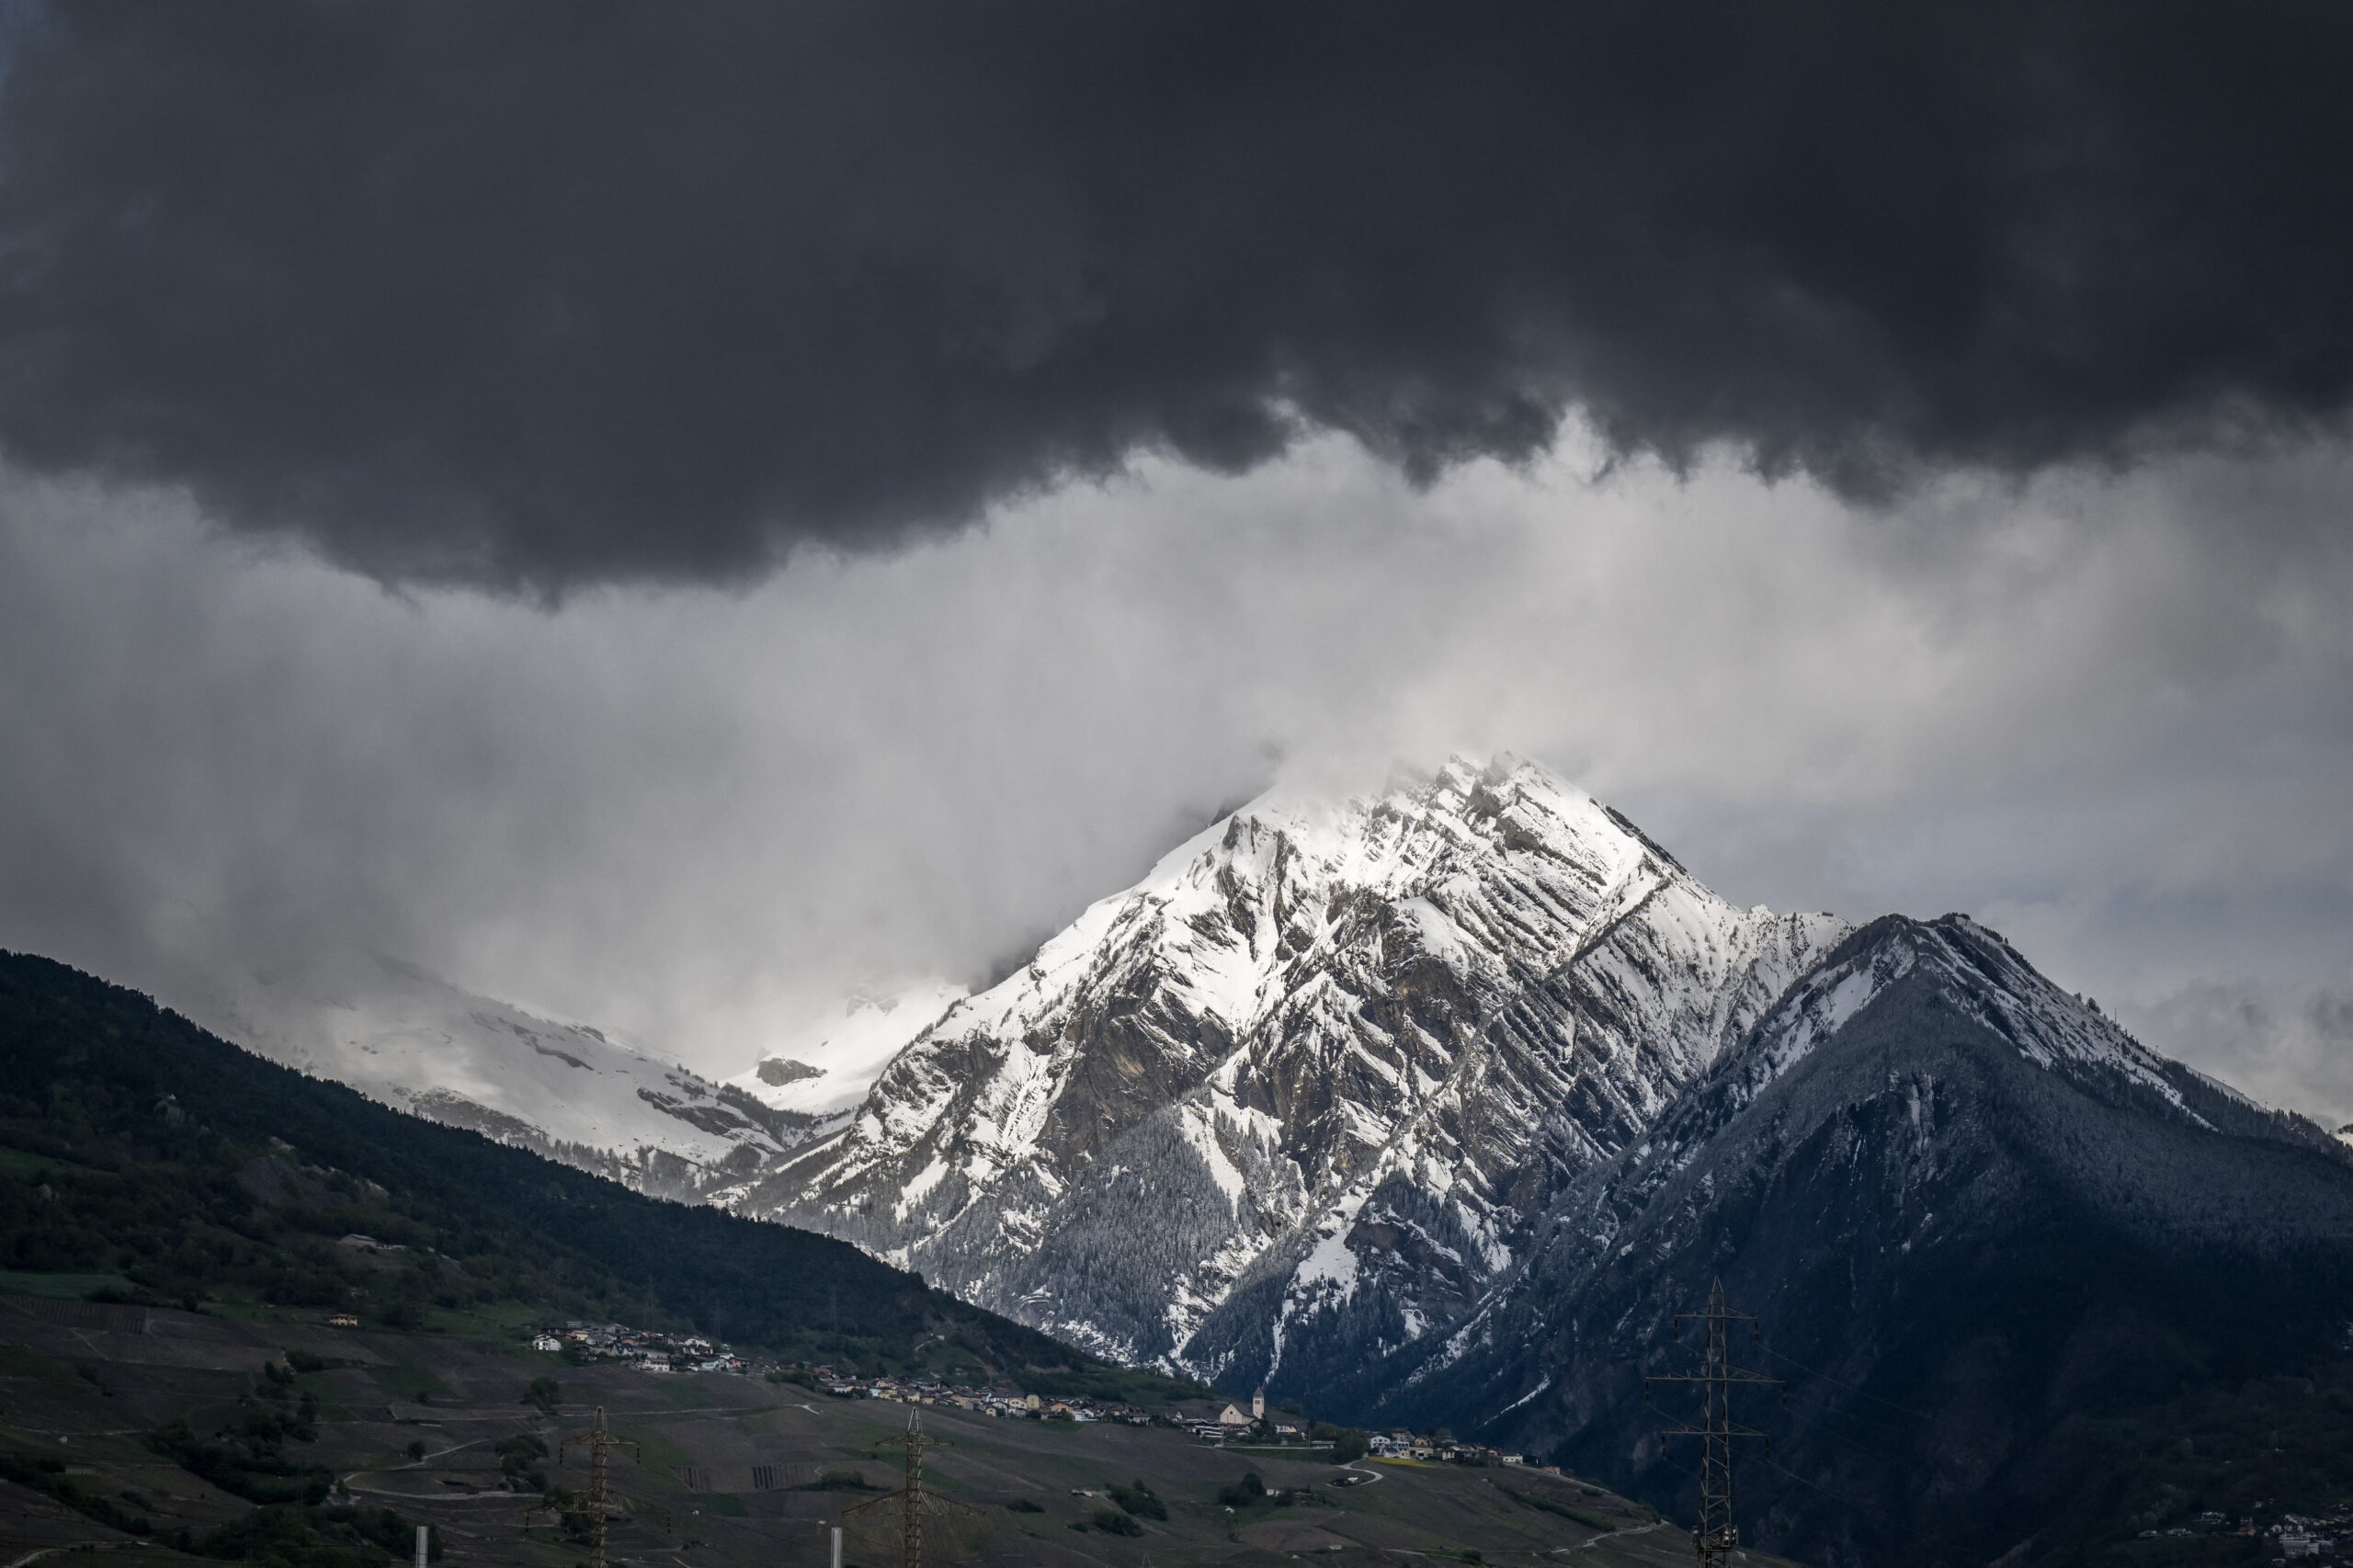 Switzerland: Two dead, one missing after landslide